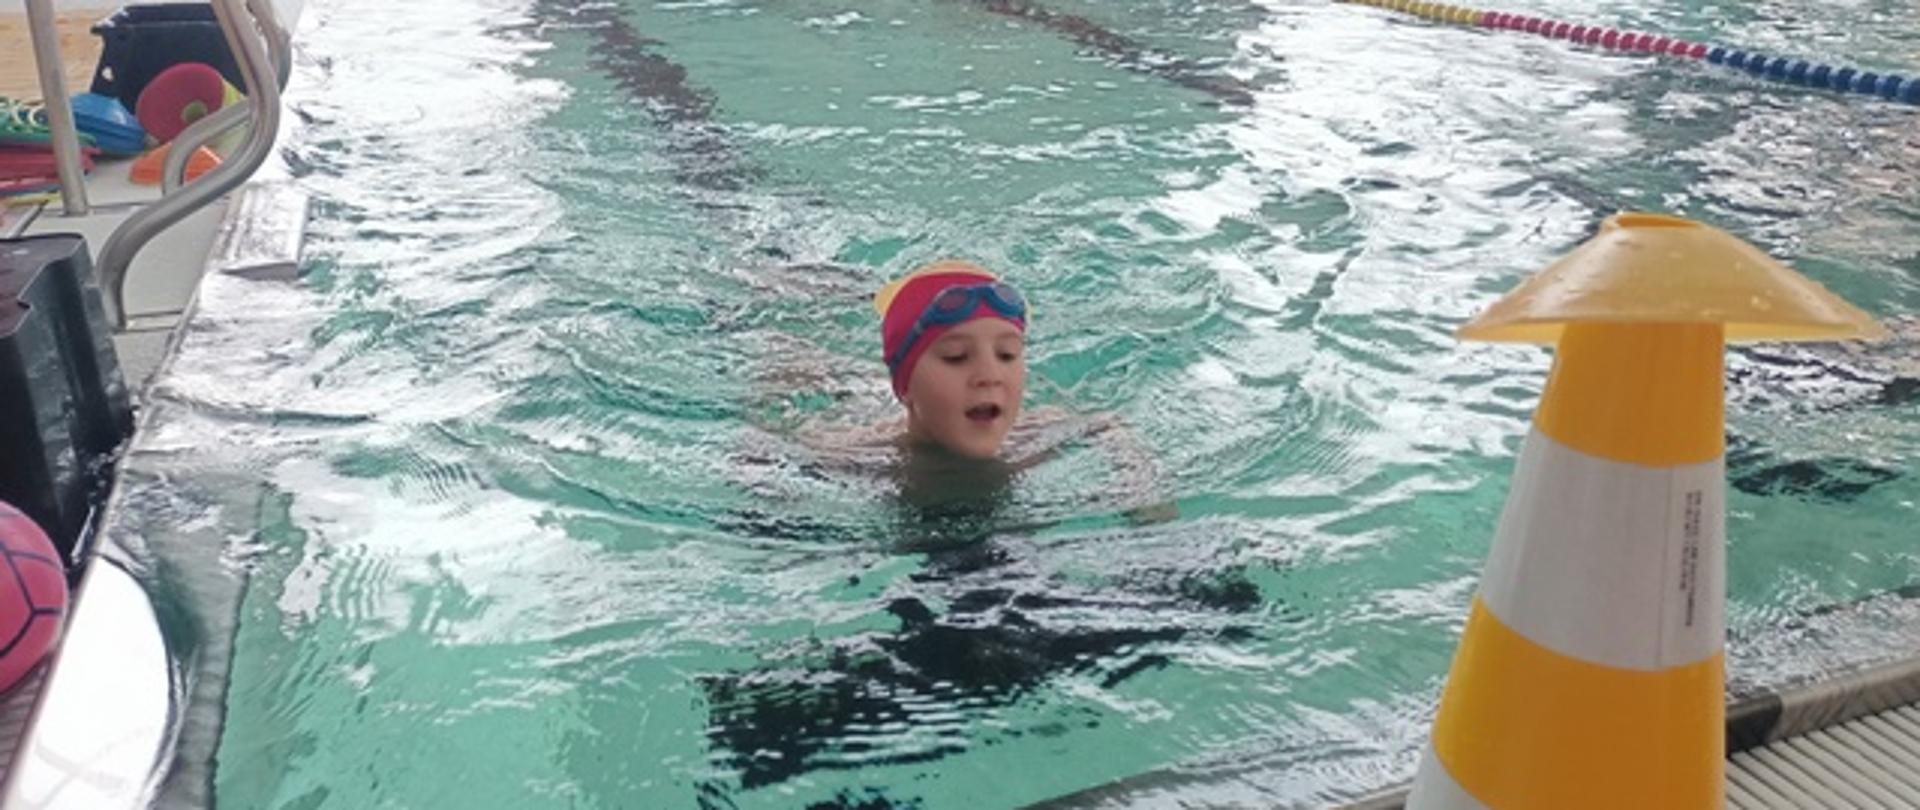 Wyścigi - dzieci pokonują tor przeszkód w wodzie